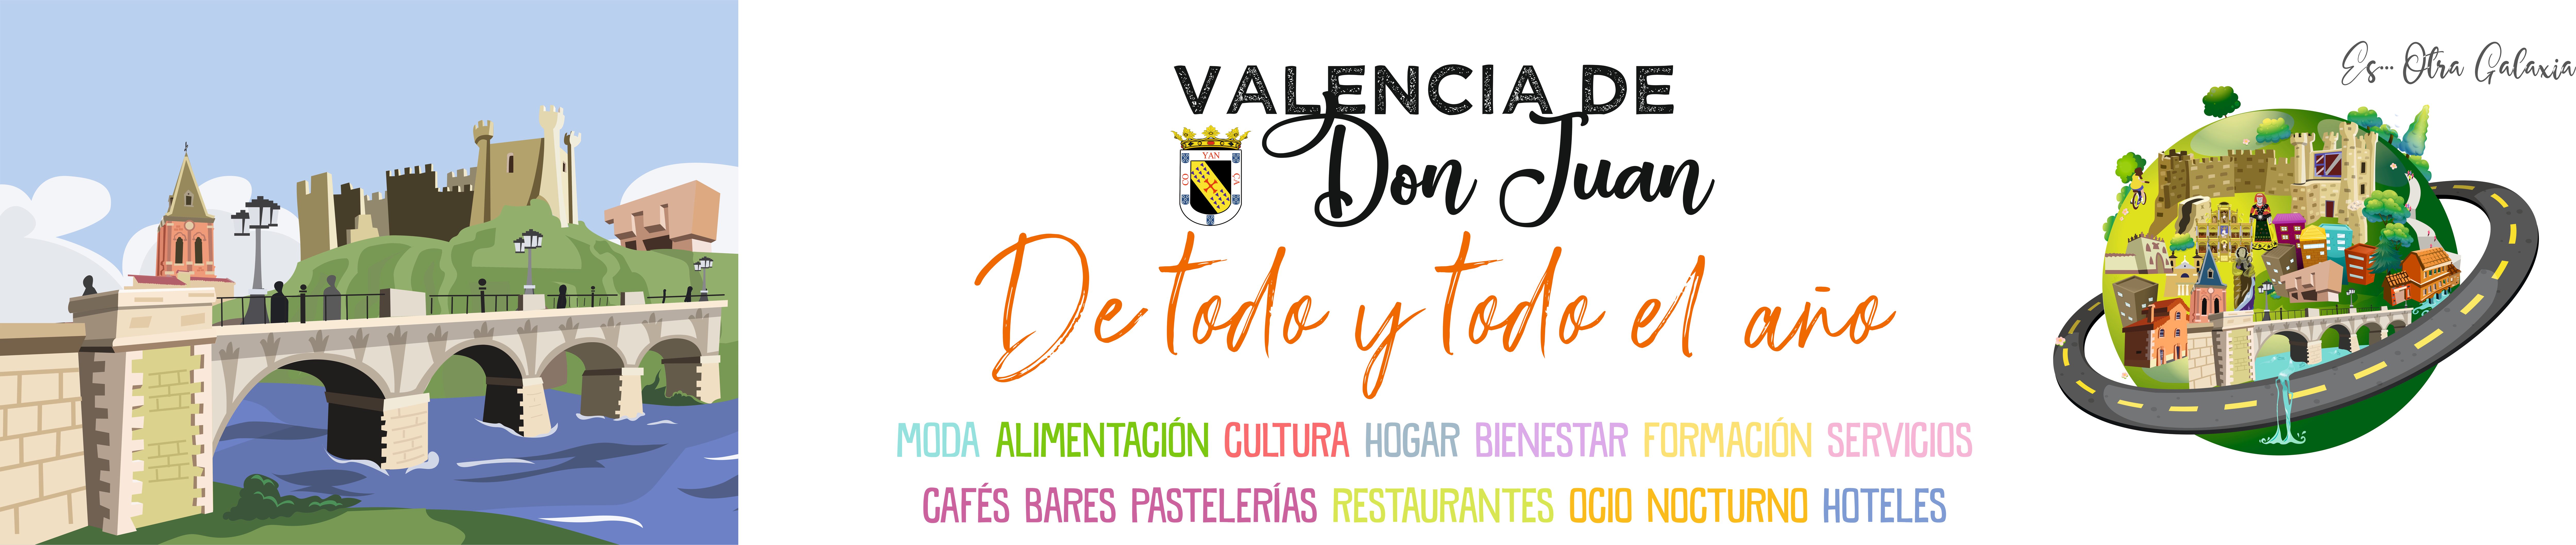 Valenica-De-Don-Juan-Postales-De-Todo-Y-Todo-El-Año